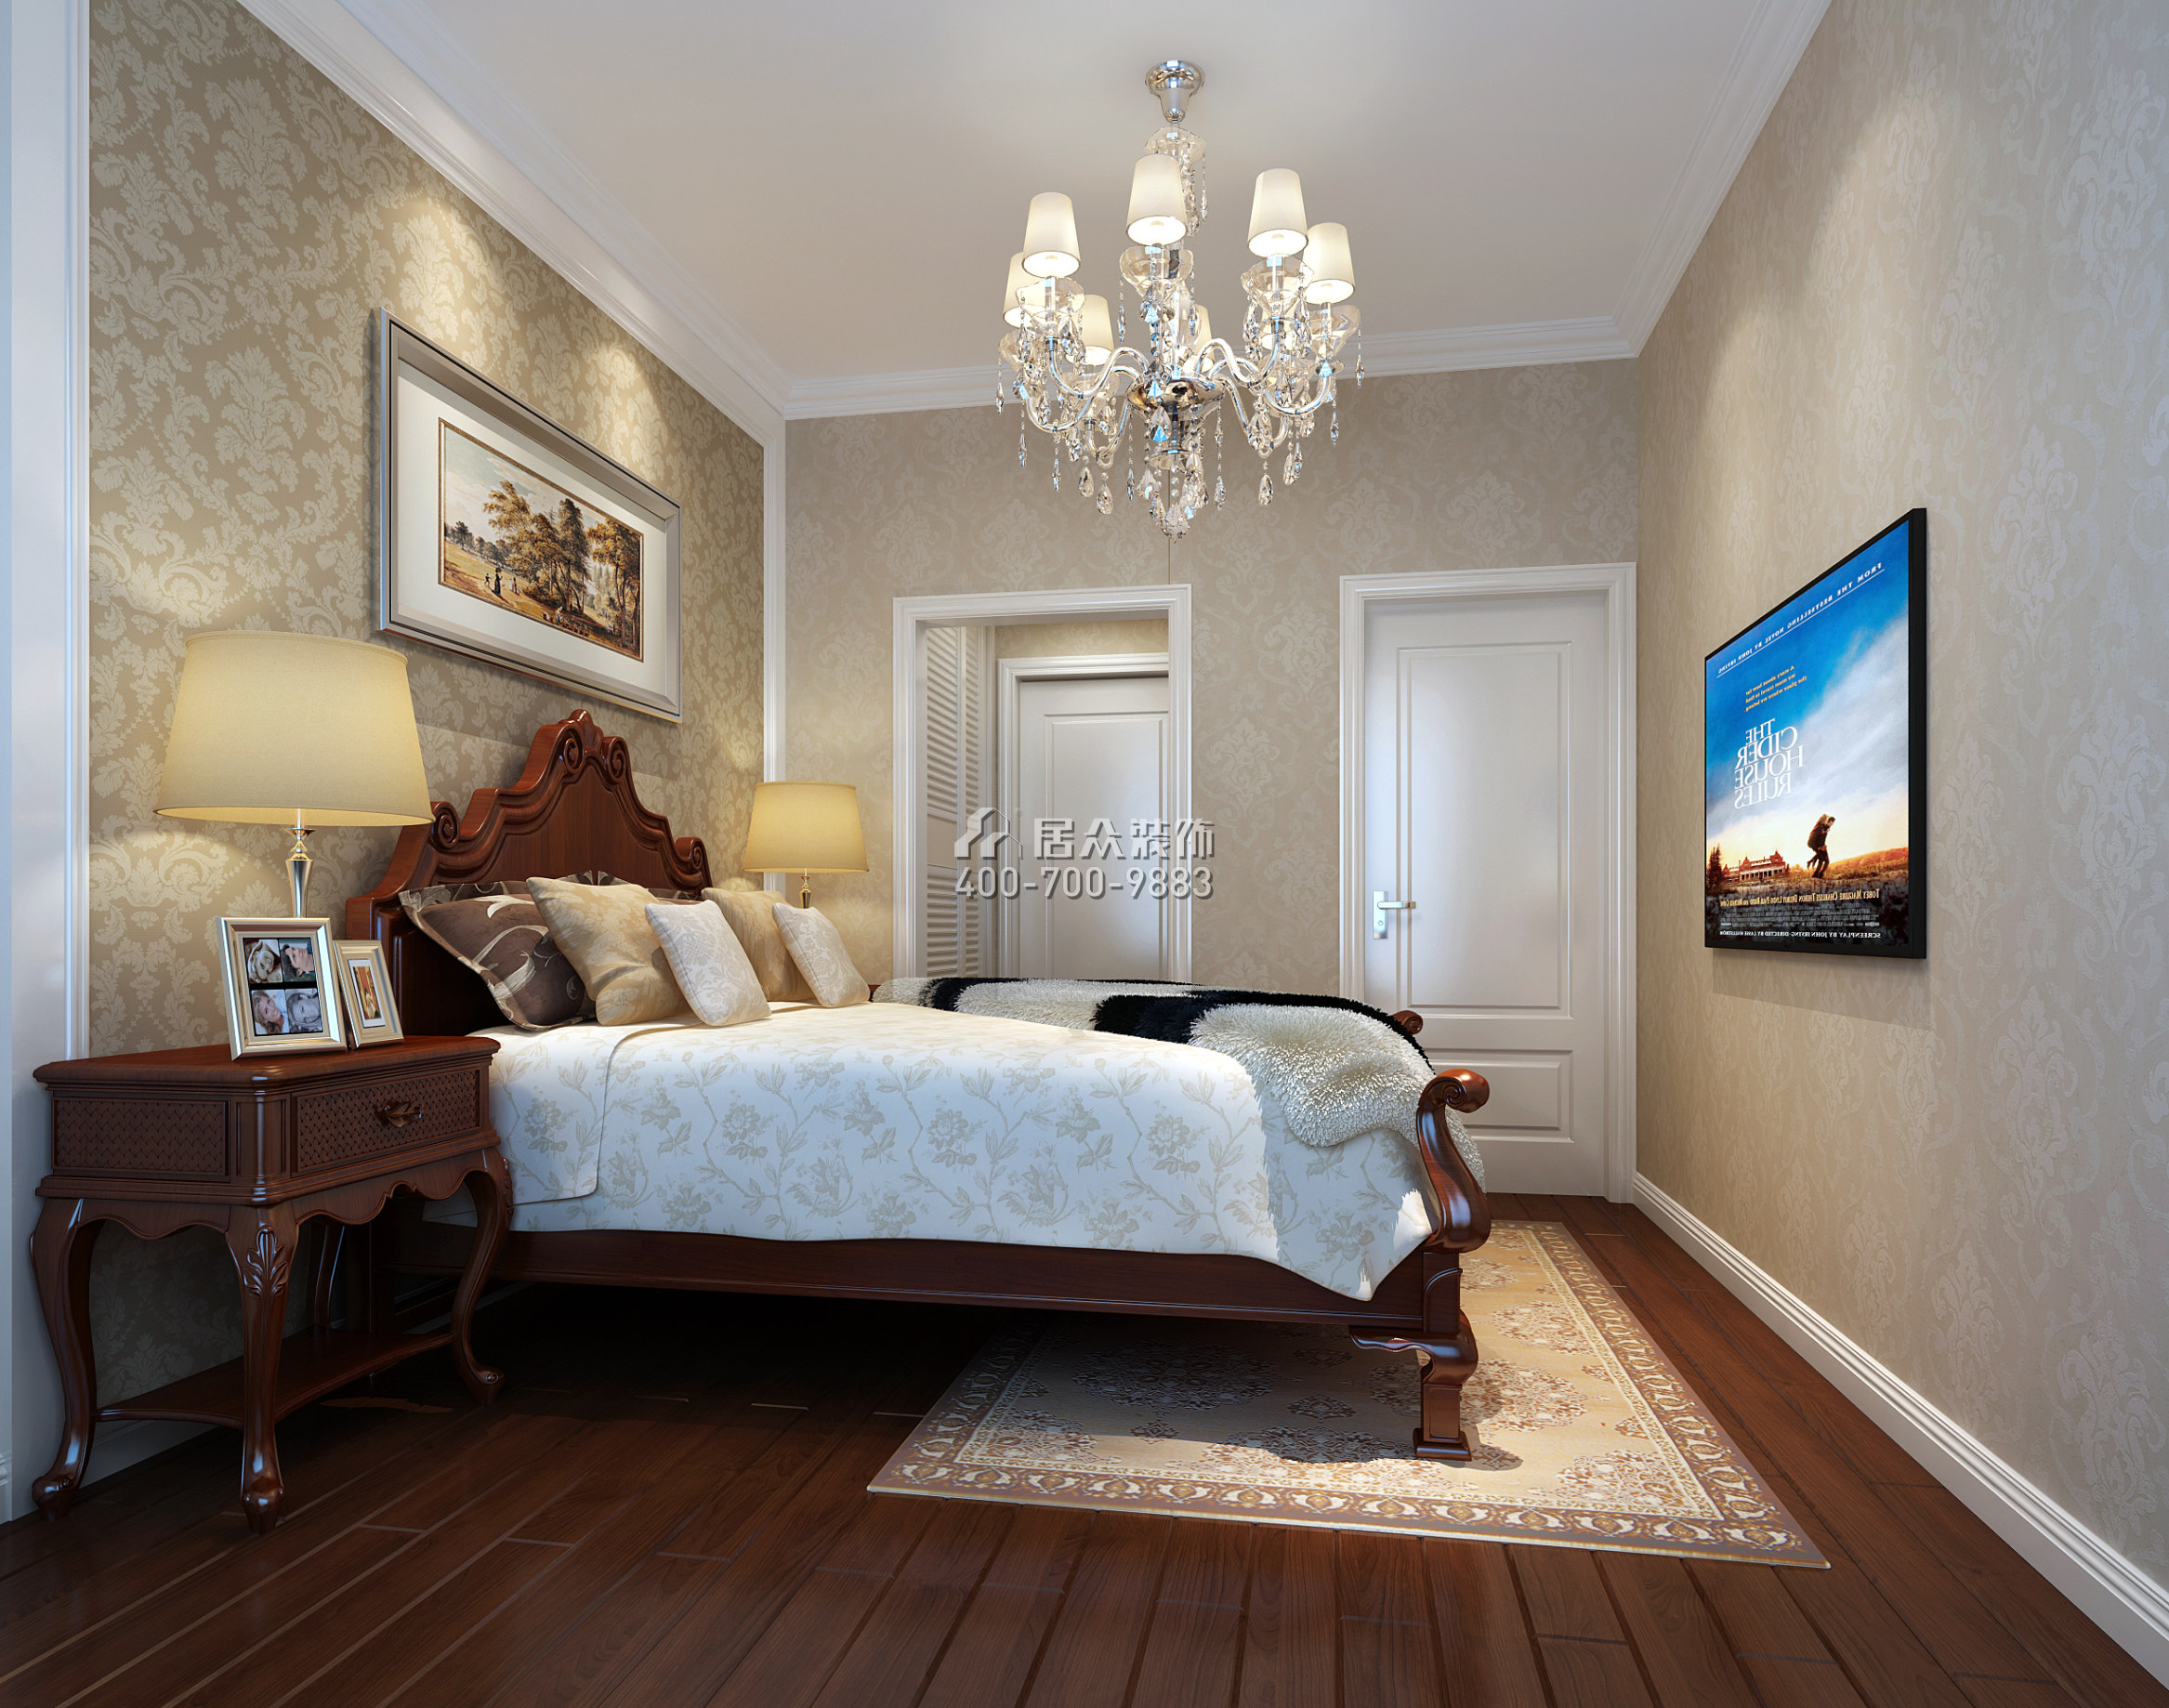 华联城市全景花园140平方米美式风格平层户型卧室装修效果图